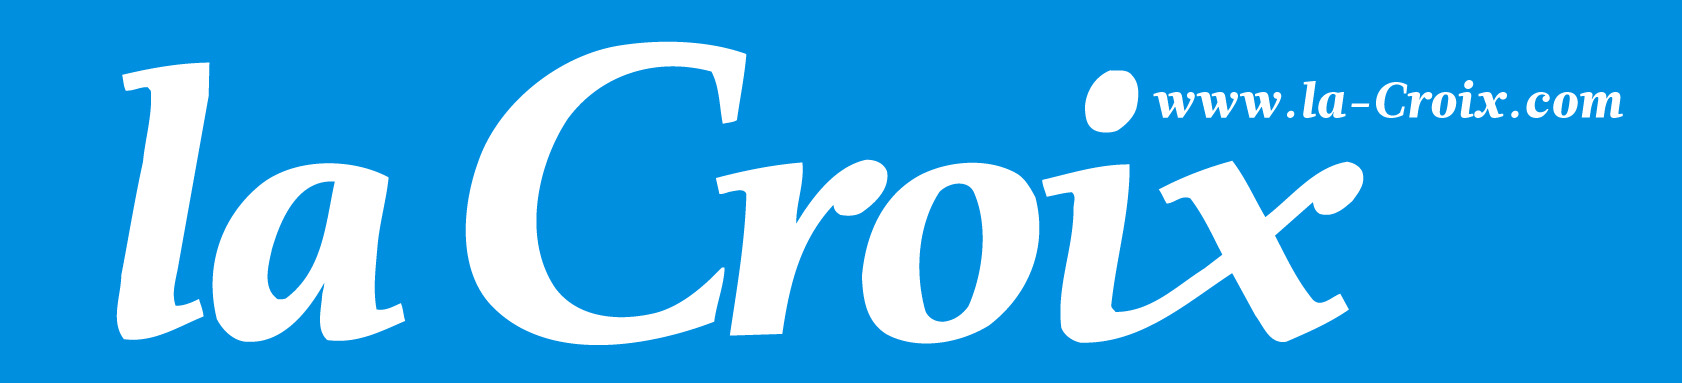 Logo-La-Croix-avec-site